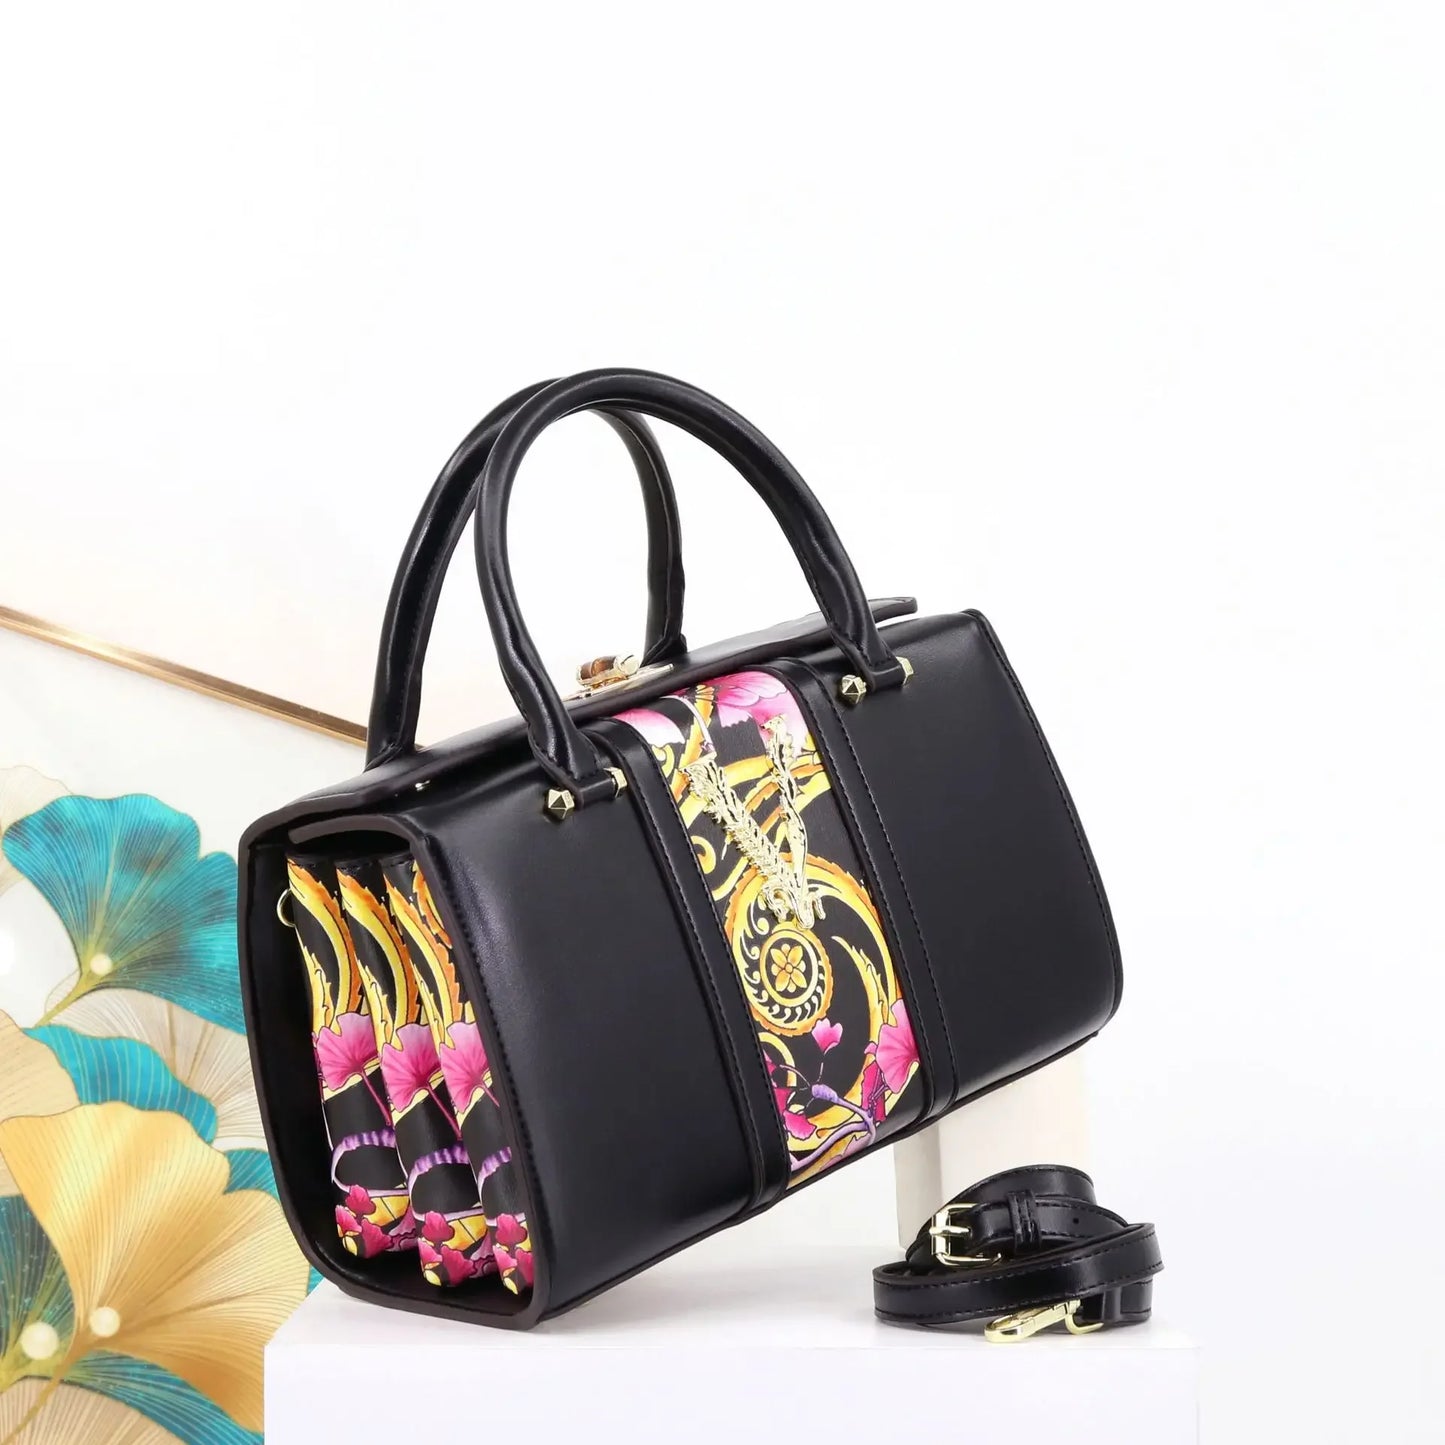 Fashion Printing Handbag for Women